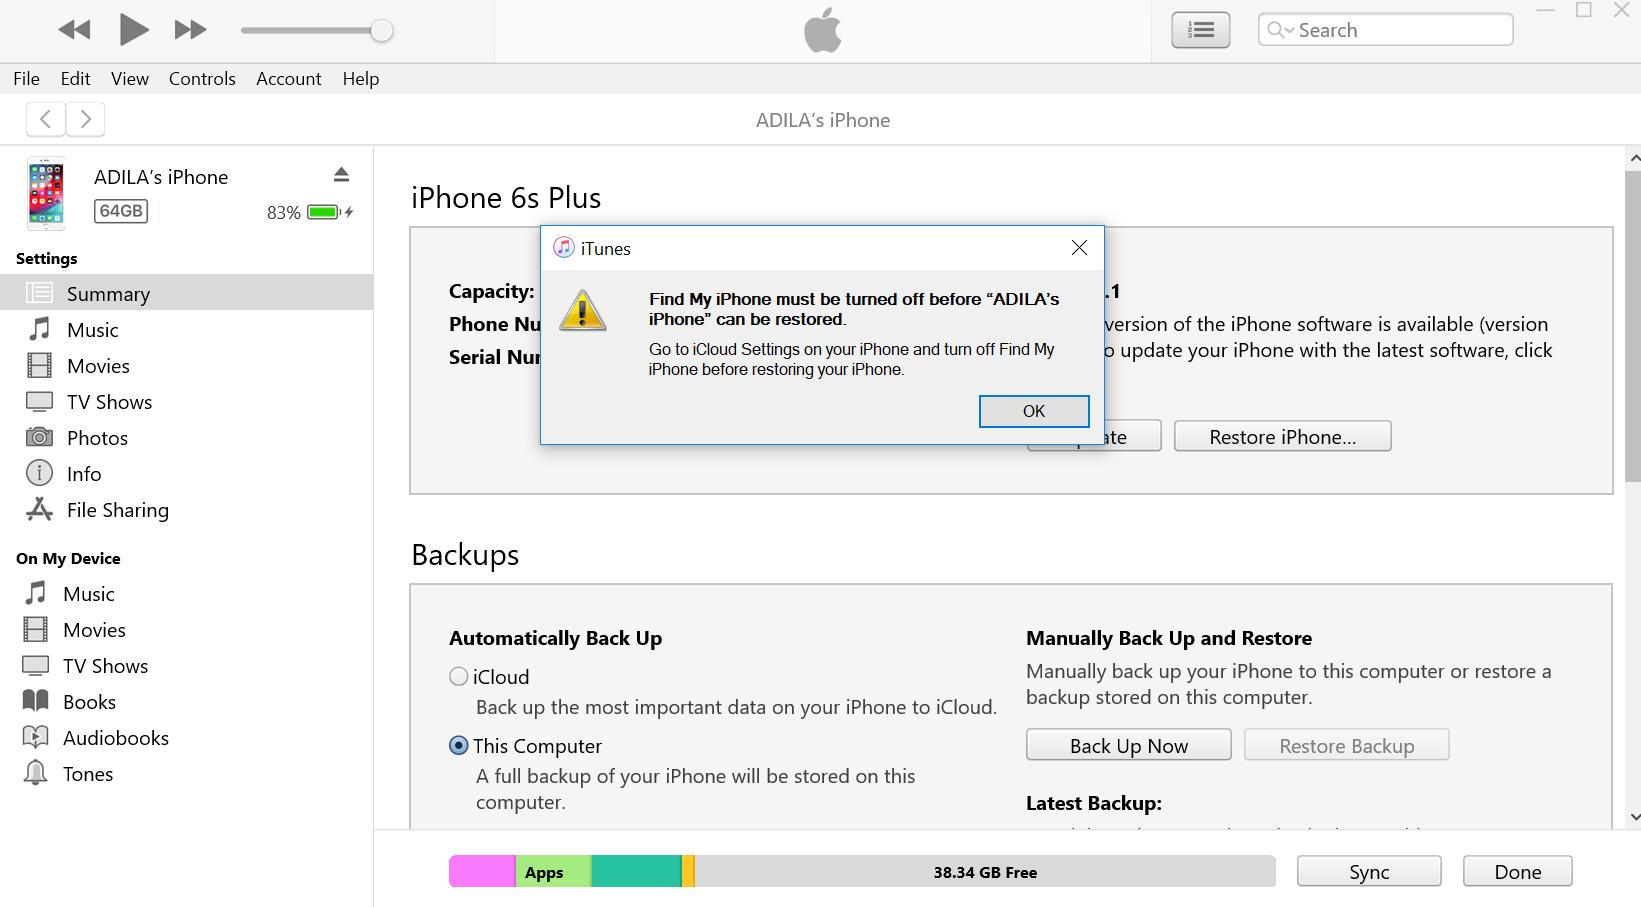 Siapa Pakai iPhone 5s, 6 &#038; 6s Yang Dah Mula Jadi Slow, Atasi Masalah Dengan Langkah Mudah Ini